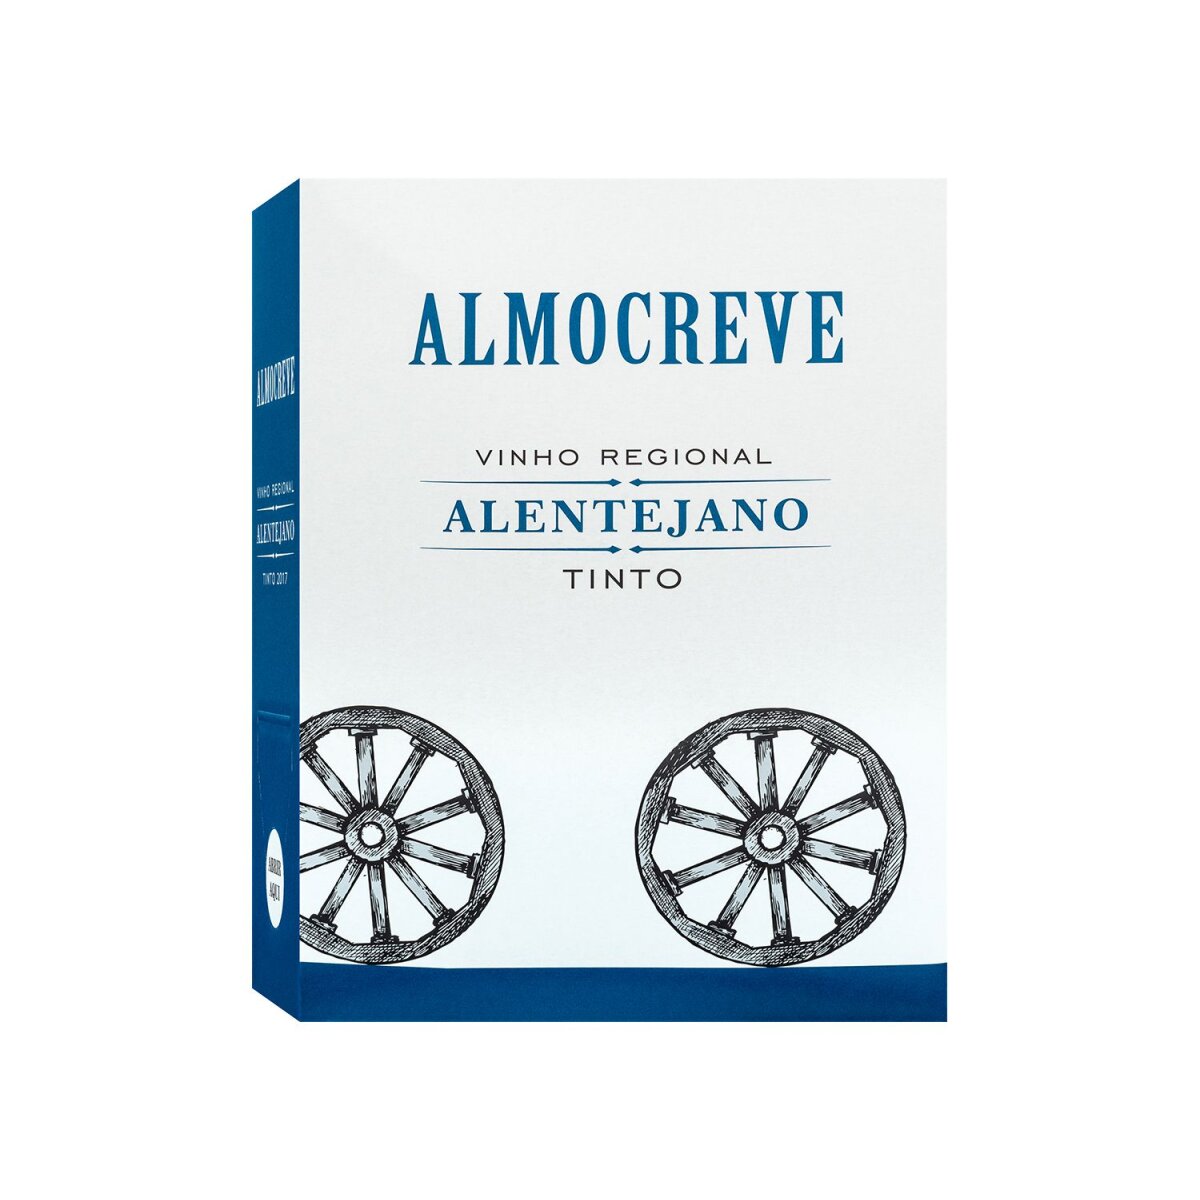 Eine große Auswahl an Produkten Almocreve Alentejano Vinho Regional € 9,99 Rotwein 2019, Bag-in-Box